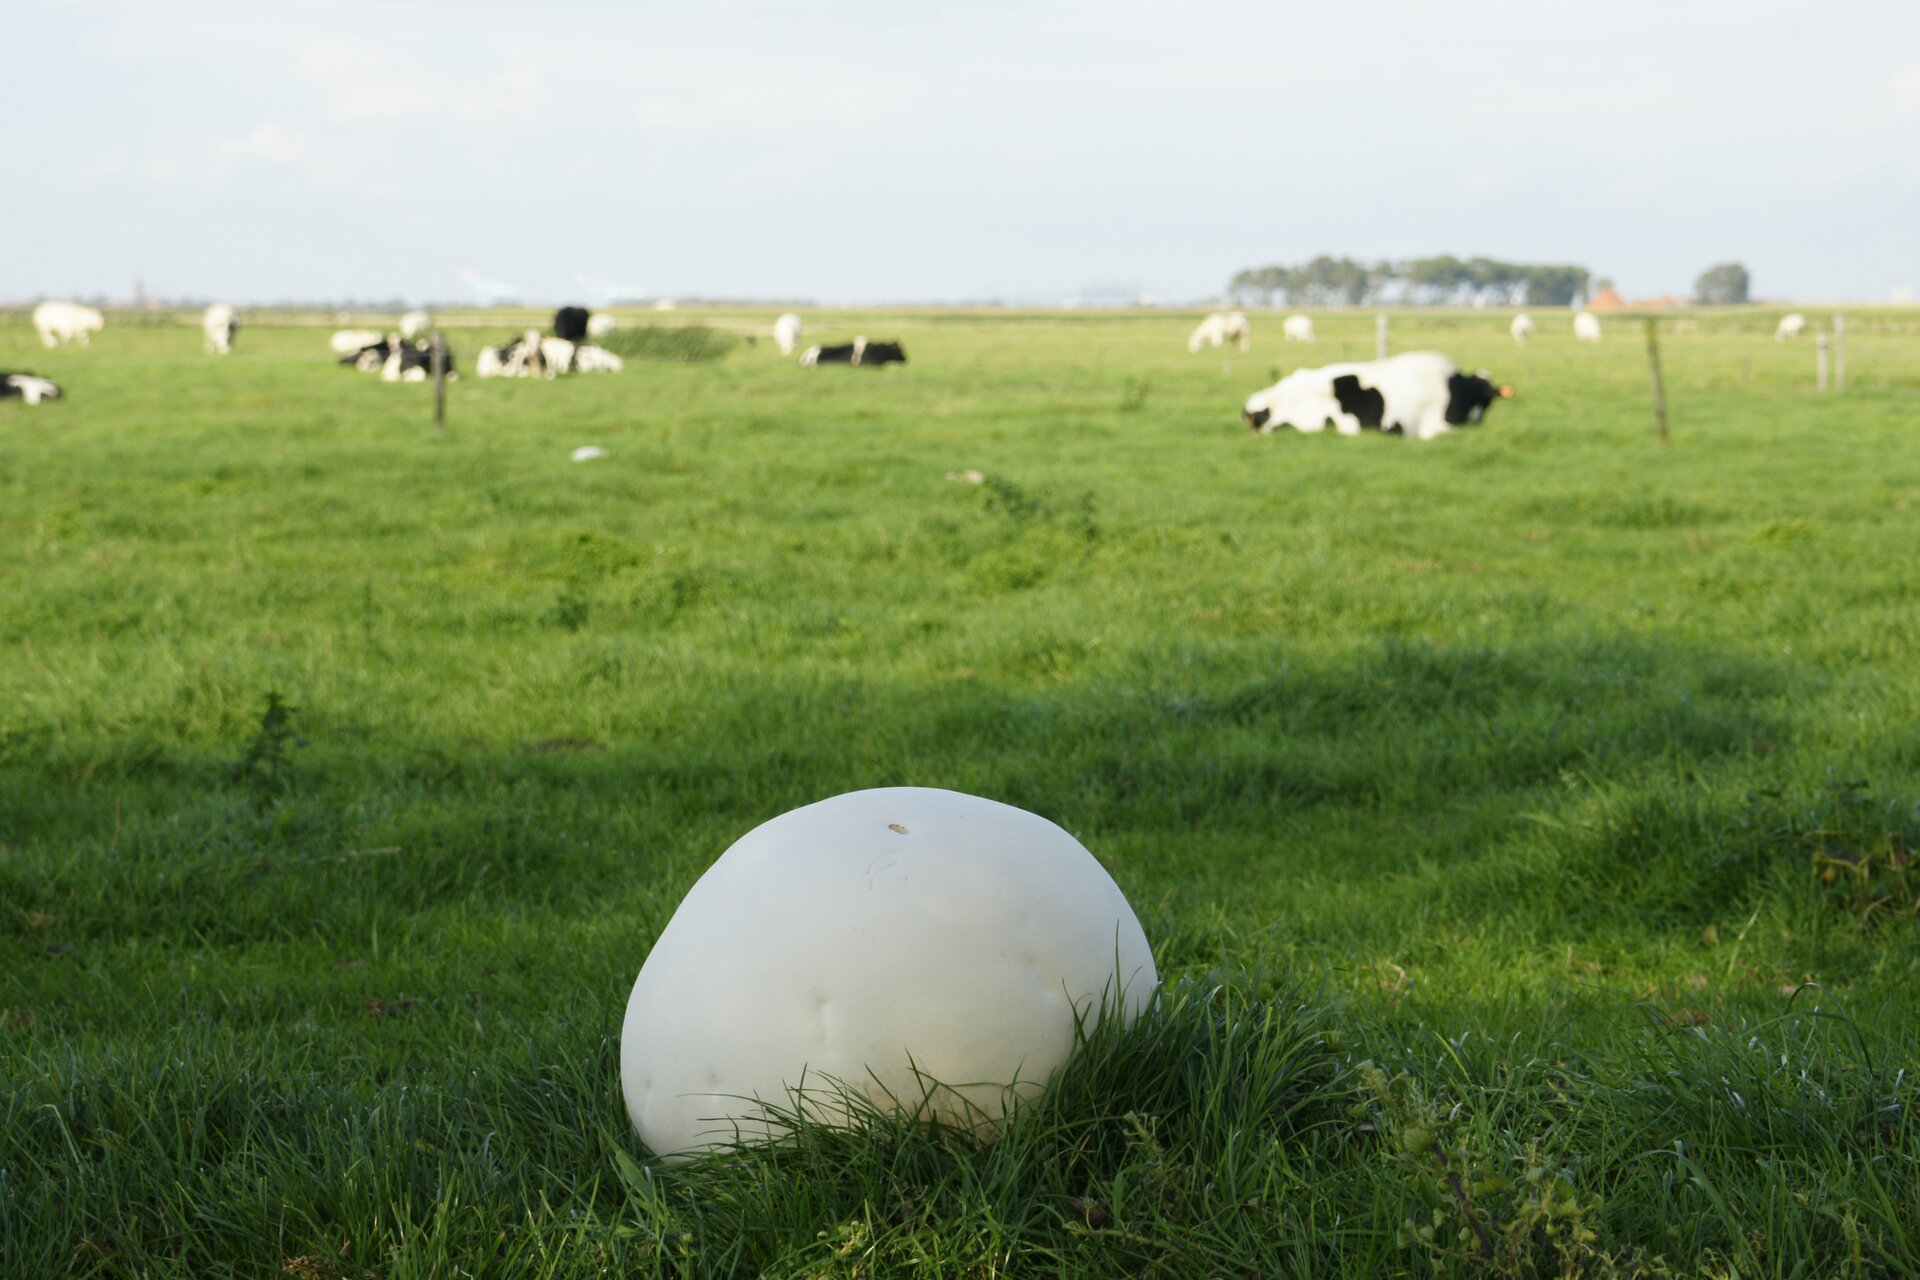 Fotografia przedstawia zieloną łąkę, na której pasą się krowy. Na pierwszym planie w trawie znajduje się biały, wielki owocnik grzyba czasznicy olbrzymiej, przypominający kamień.